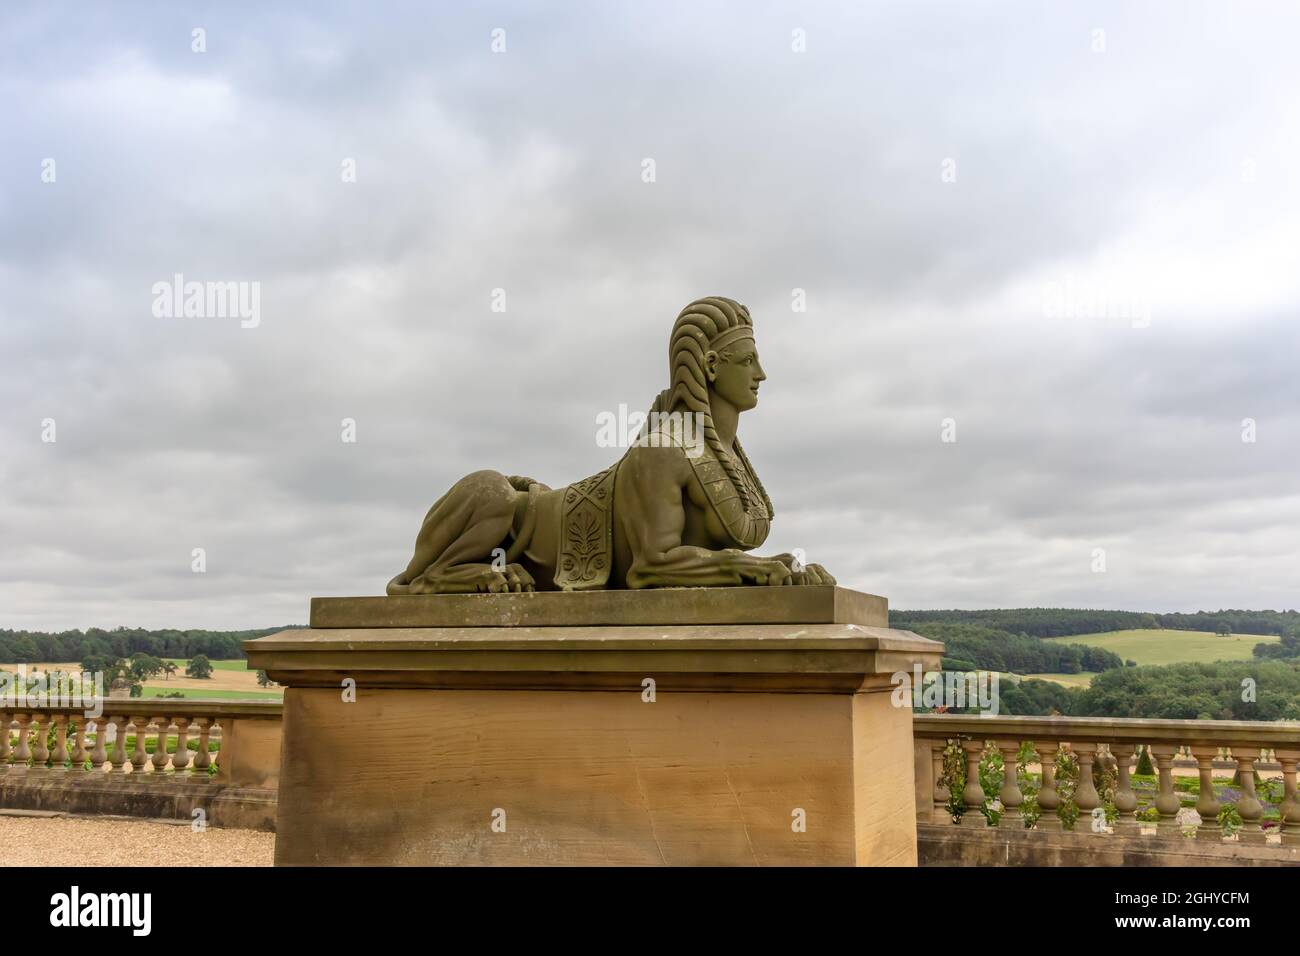 Antica scultura in pietra scolpita di una sfinge, famoso monumento raffigura il corpo di un leone con una testa umana nei giardini di Harewood House vicino Leeds. Foto Stock